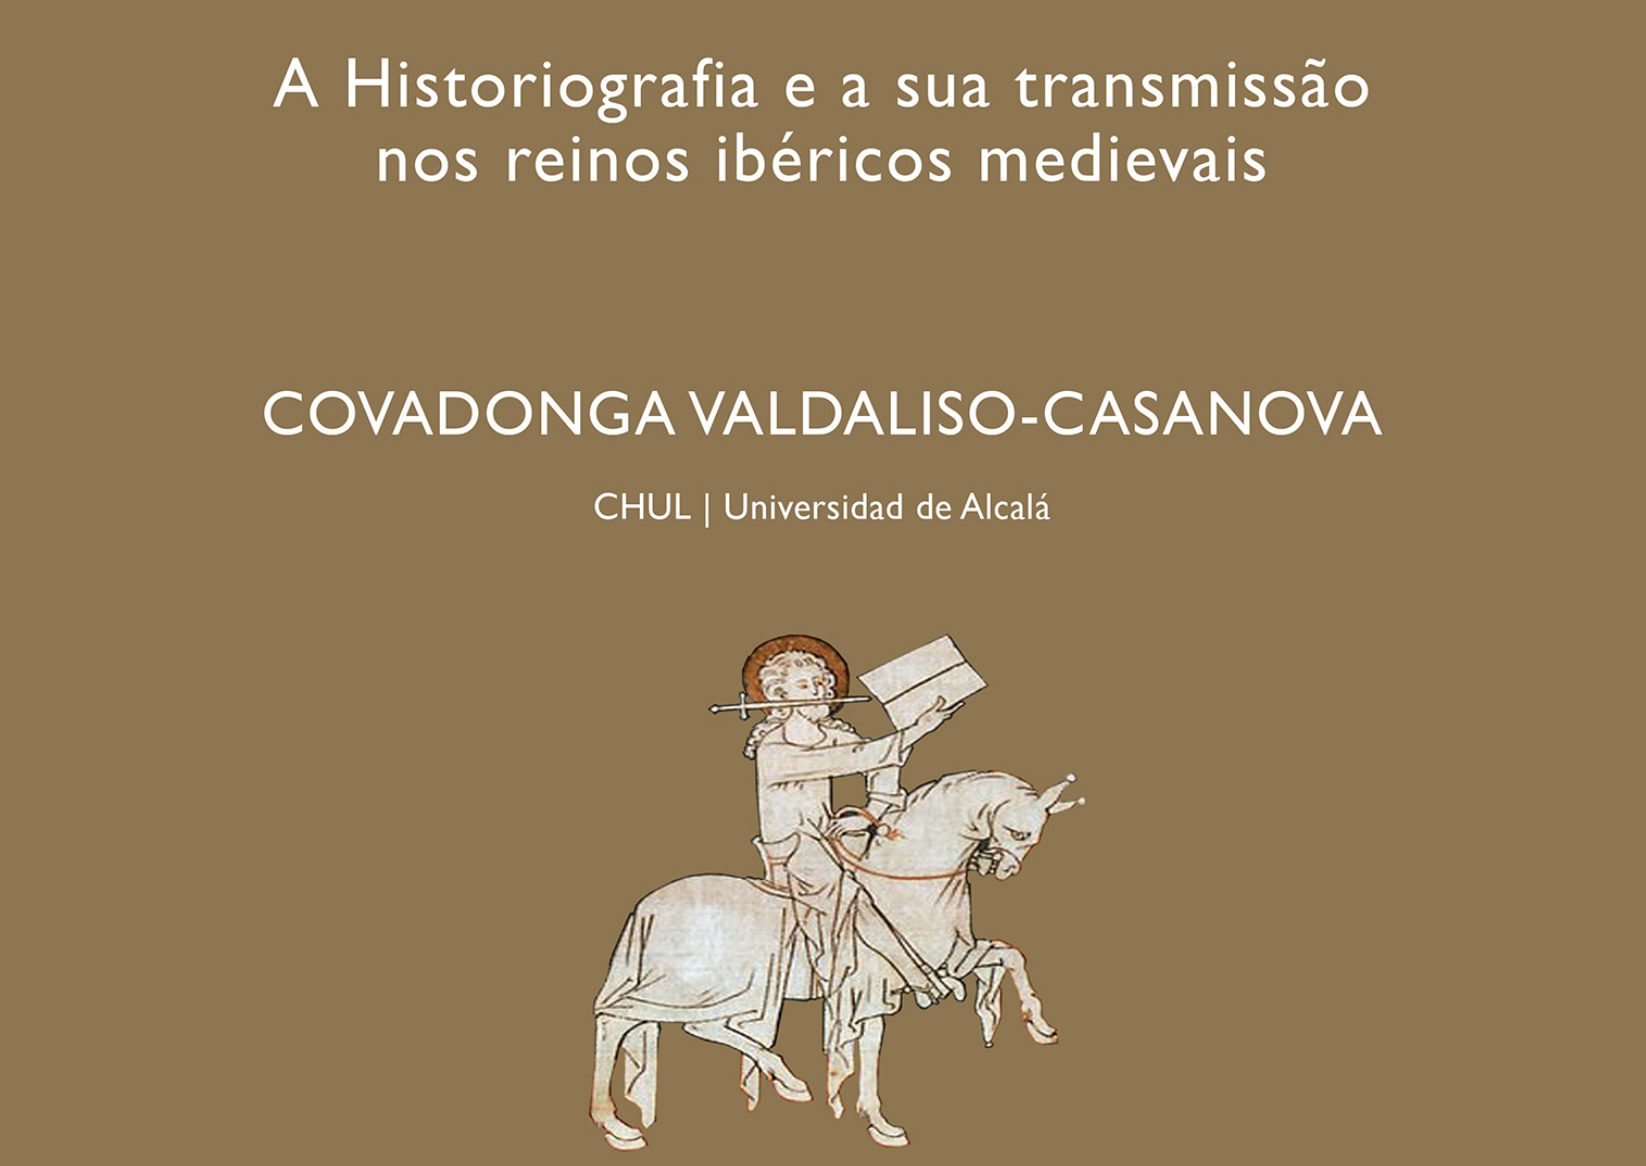 Conferência por Covadonga Valdaliso-Casanova: A historiografia e a sua transmissão nos reinos ibéricos medievais